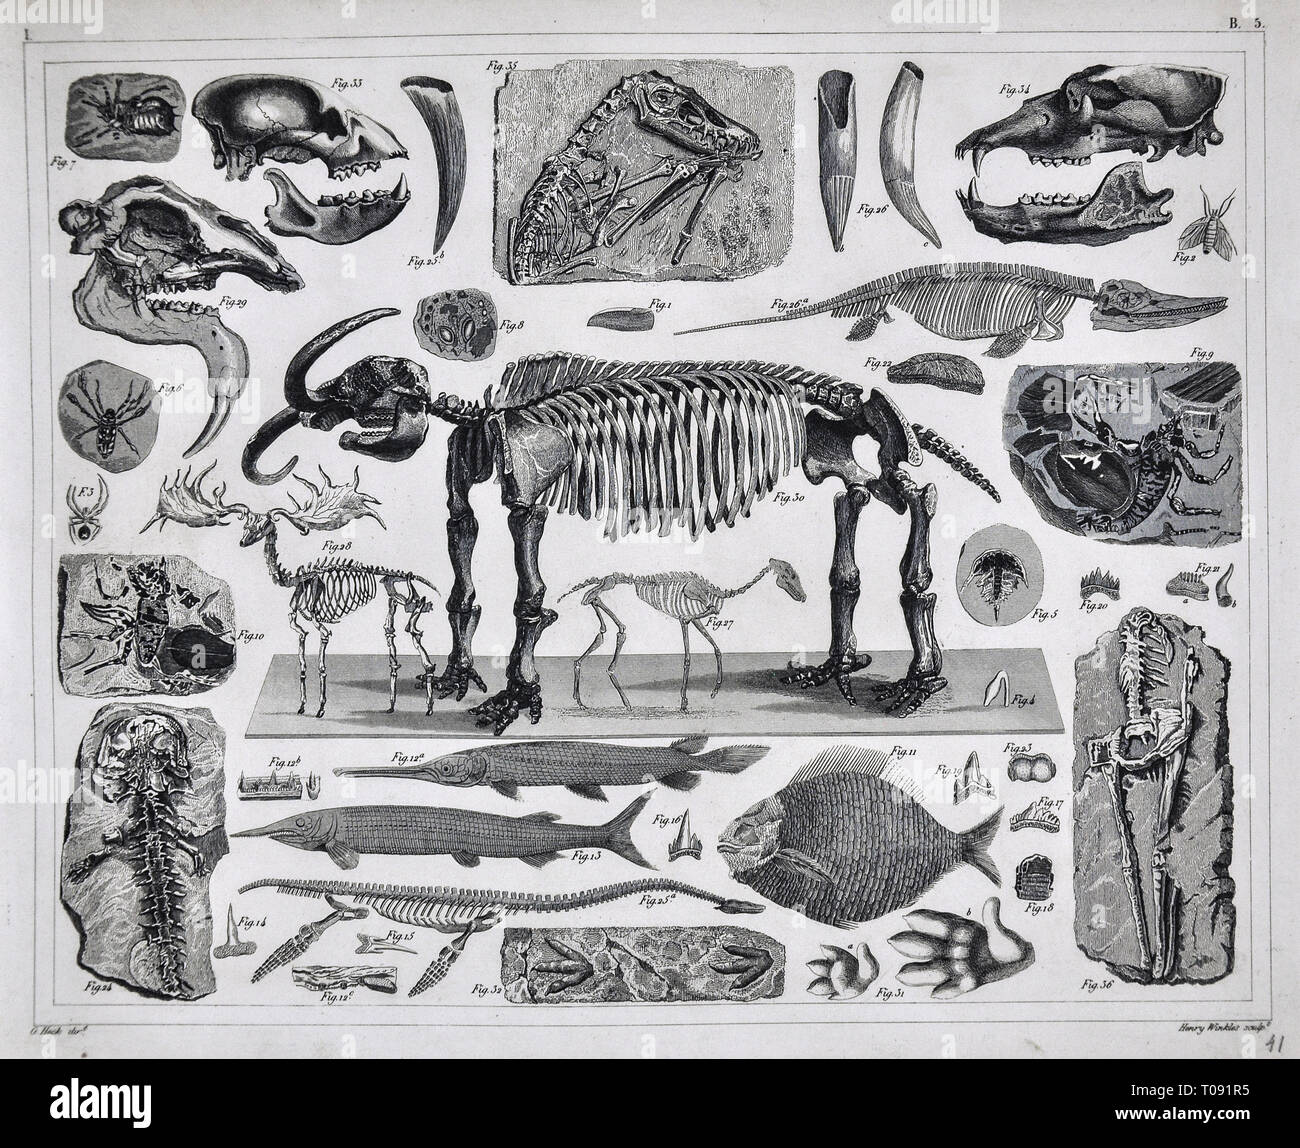 Les photos 1849 Imprimer - Atlas des fossiles préhistoriques de la période du pléistocène Cénozoïque notamment Mastodon, tigre à dents de sabre, les arachnides, les poissons et les autres espèces éteintes Banque D'Images